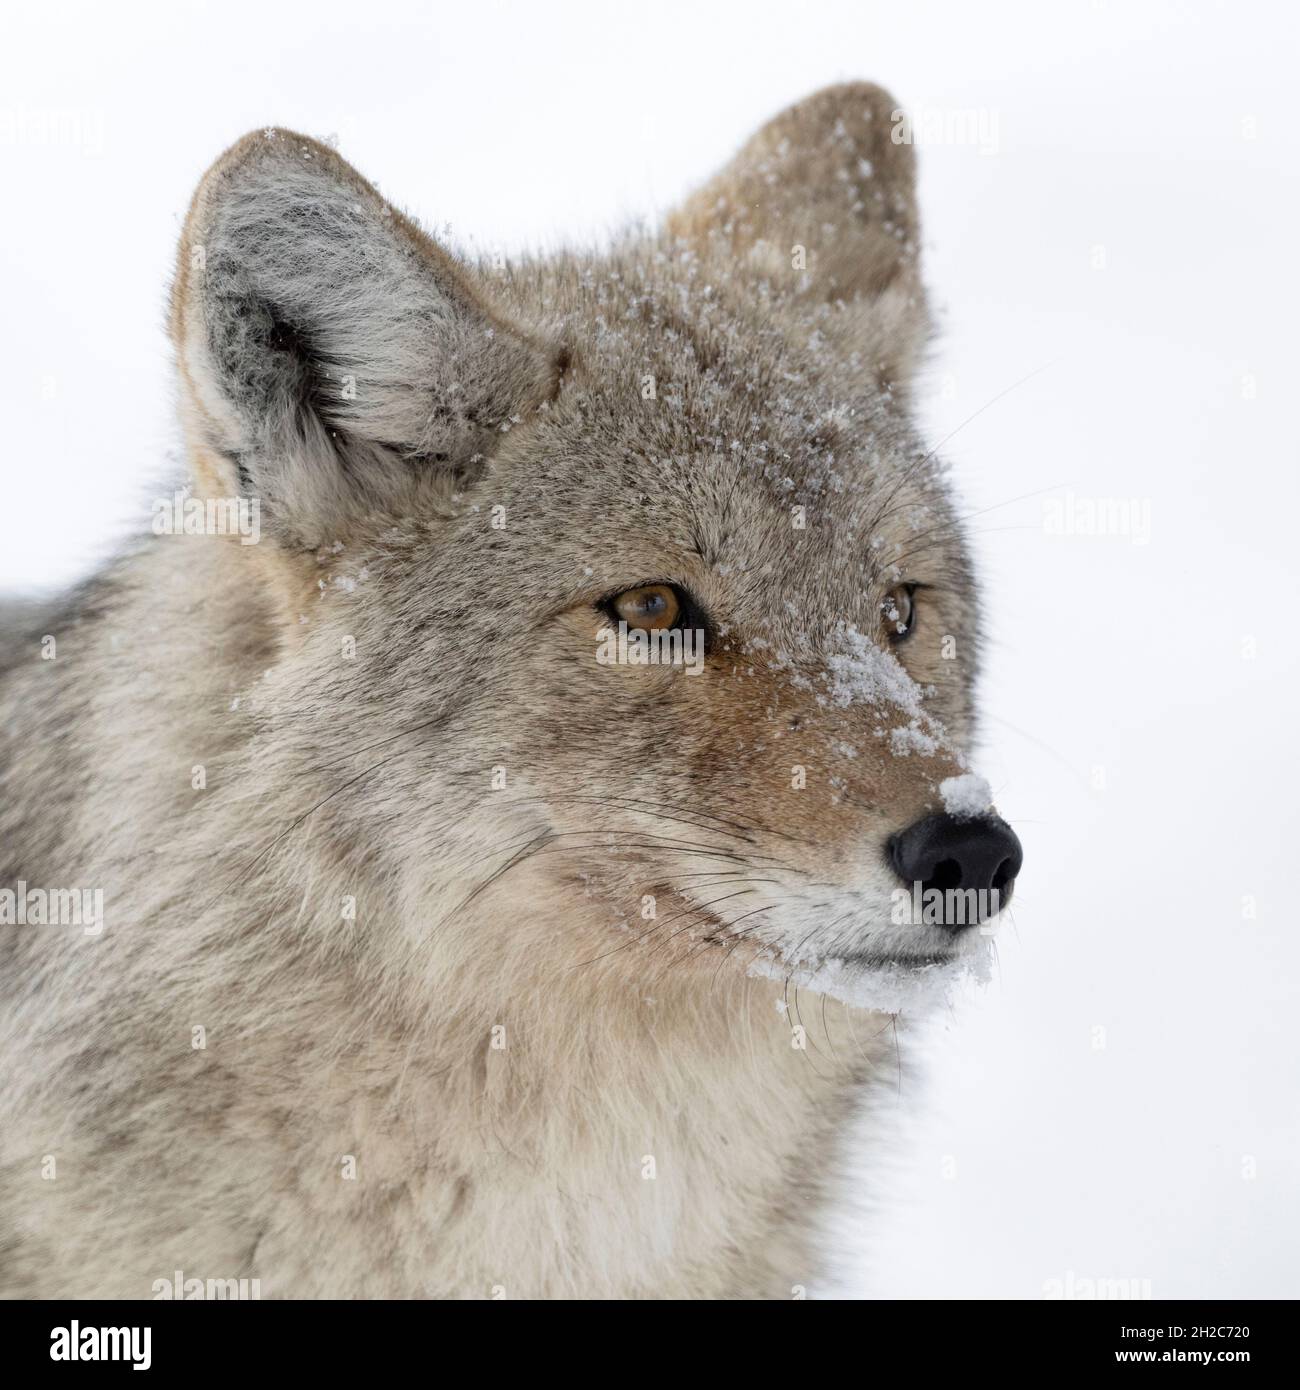 Coyote ( Canis latrans ) En invierno, primer plano de un animal adulto en la nieve, tiro con cabeza detallado, cubierto de copos de nieve, vida silvestre, Yellowstone NP, Estados Unidos. Foto de stock